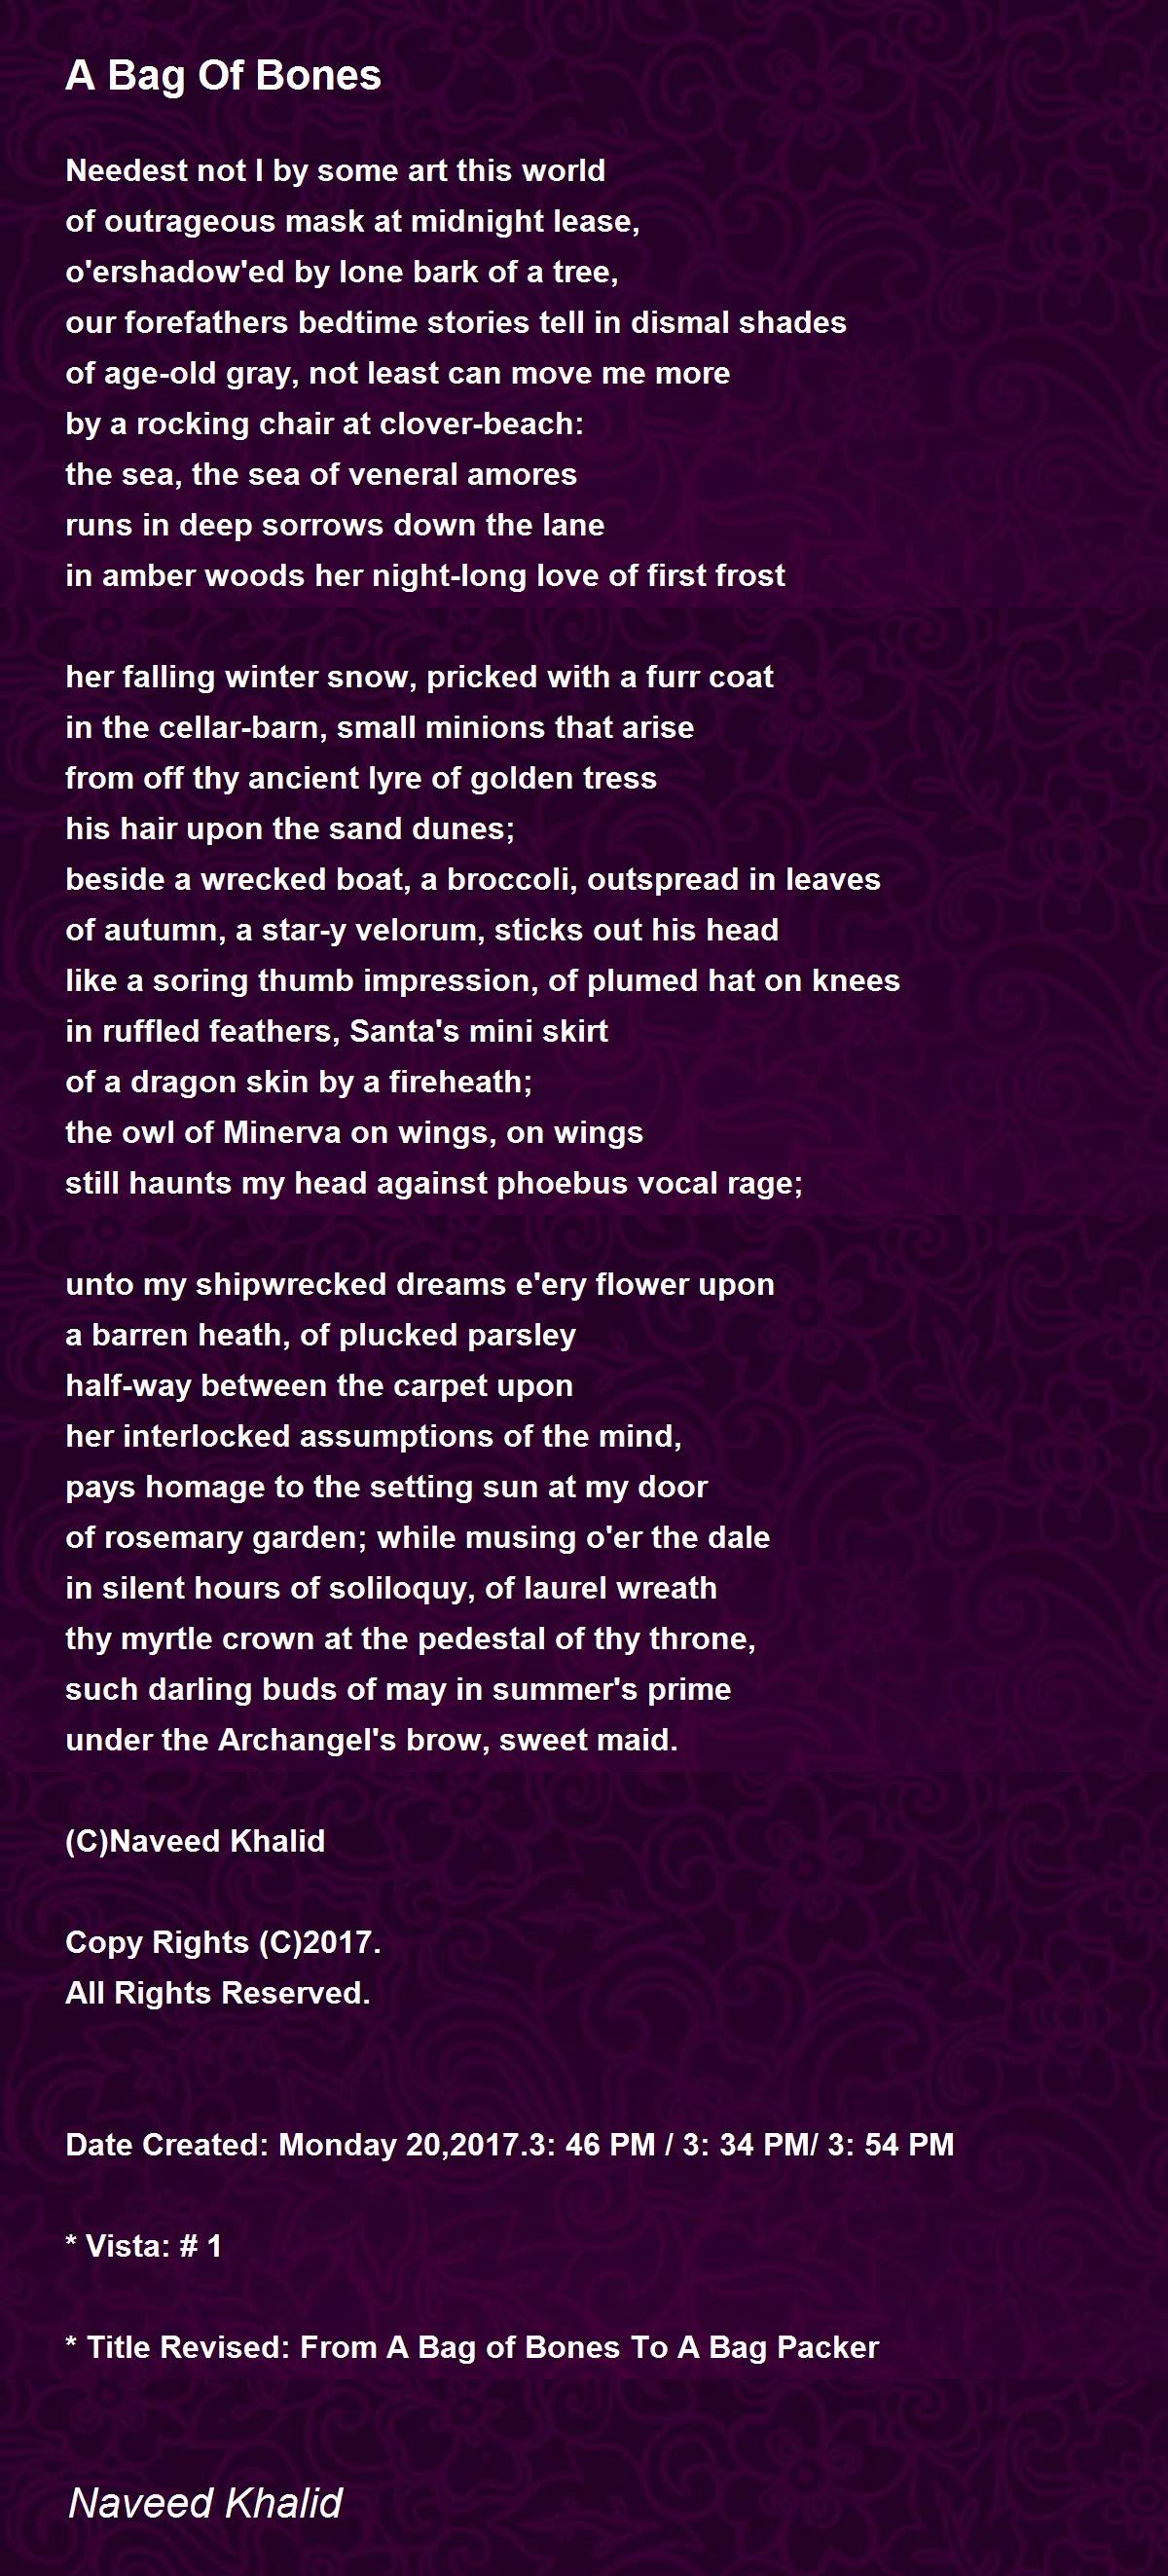 A Bag Of Bones - A Bag Of Bones Poem by Naveed Khalid